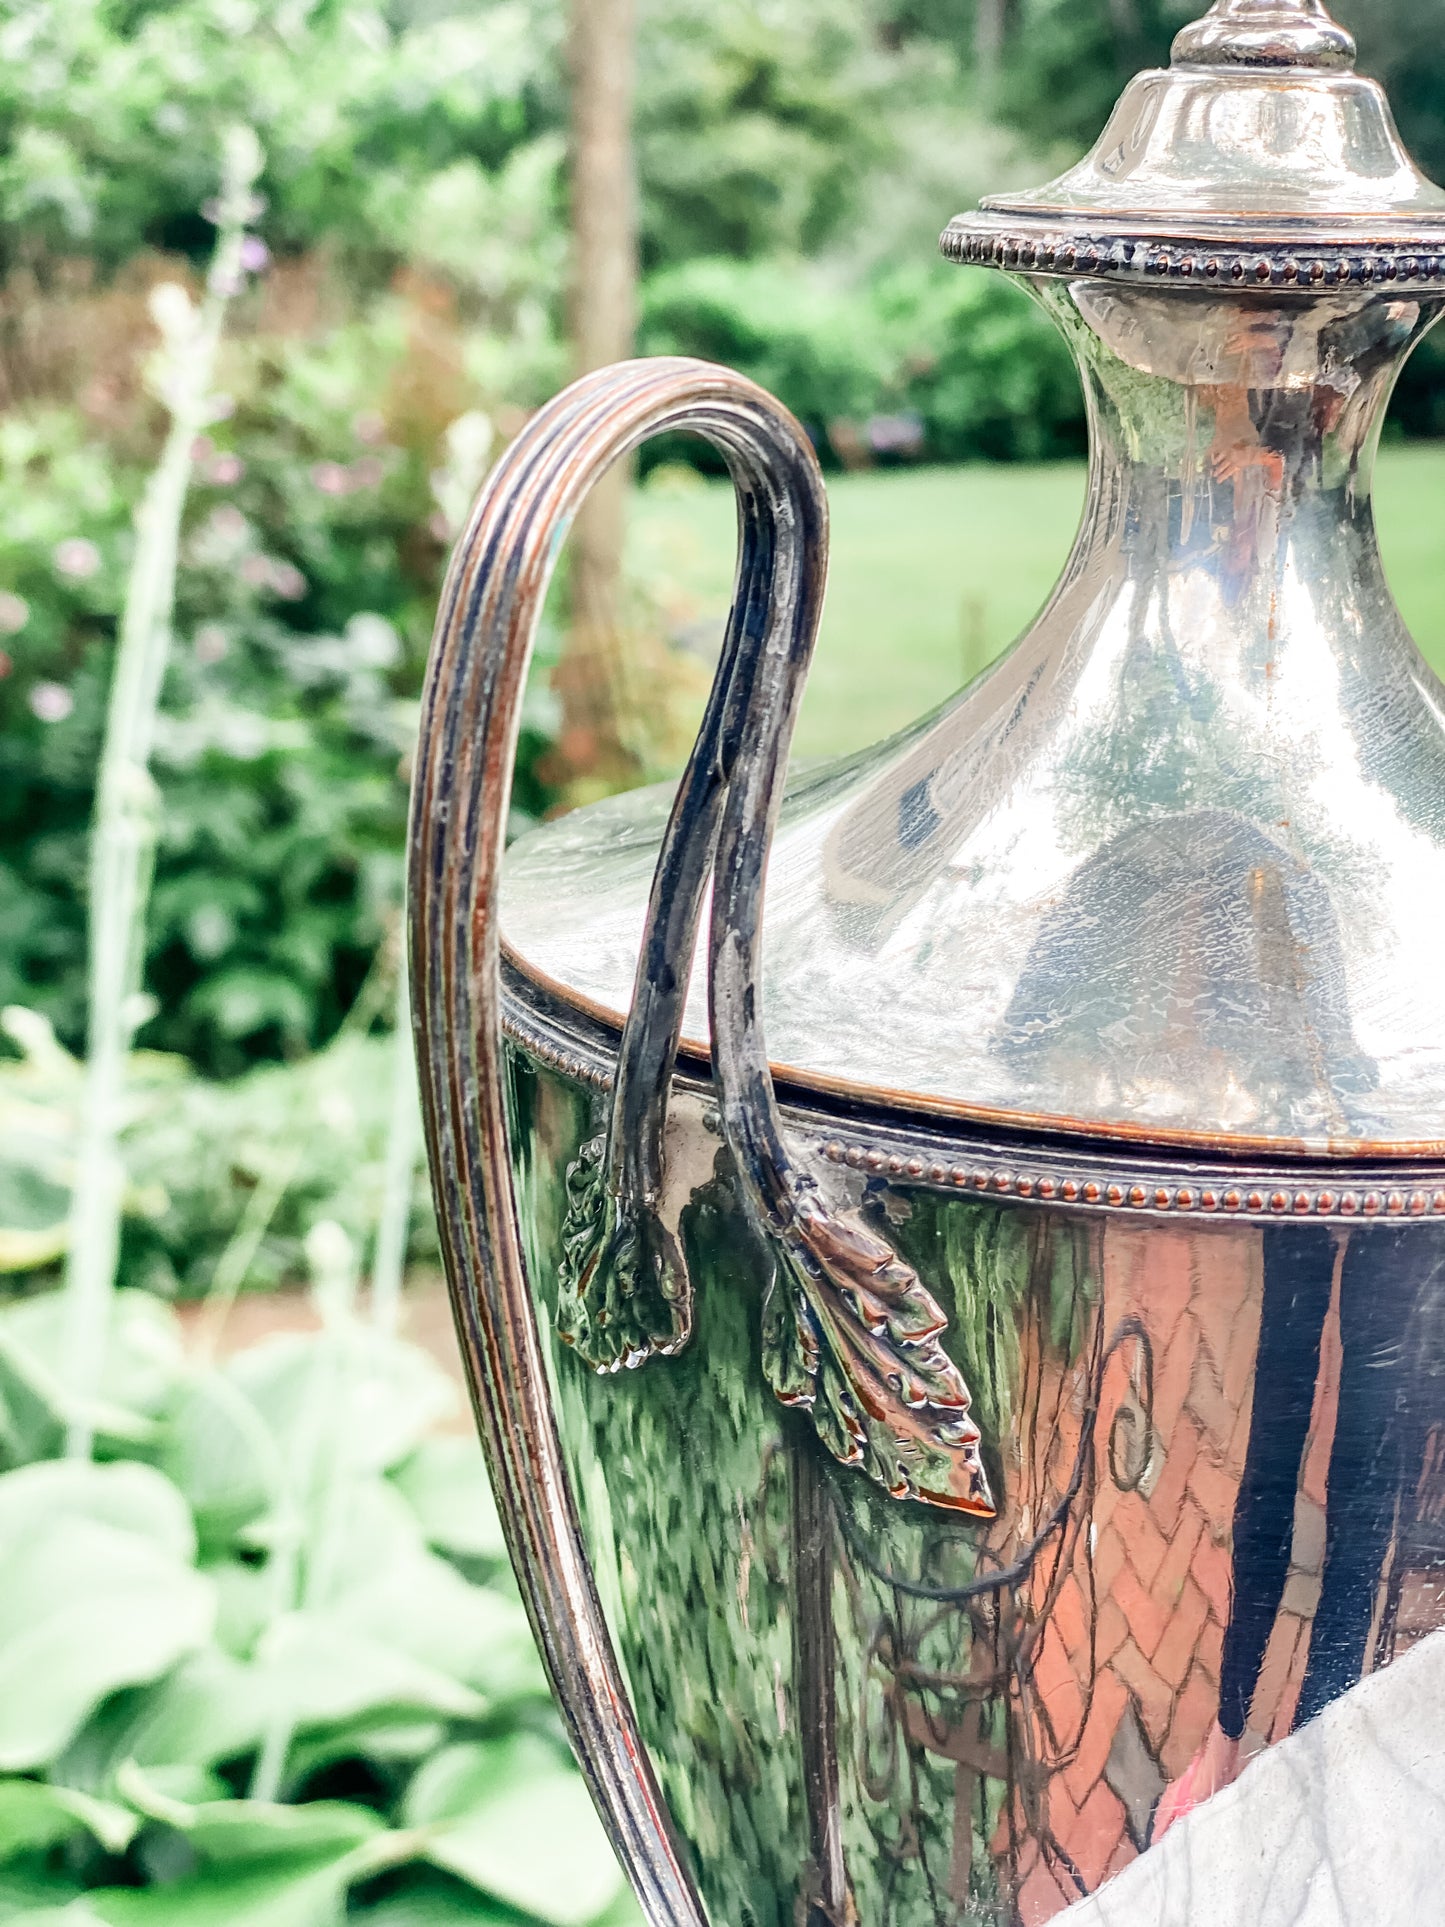 Valuable Antique "Old Sheffield Plate" Samovar or Tea Urn